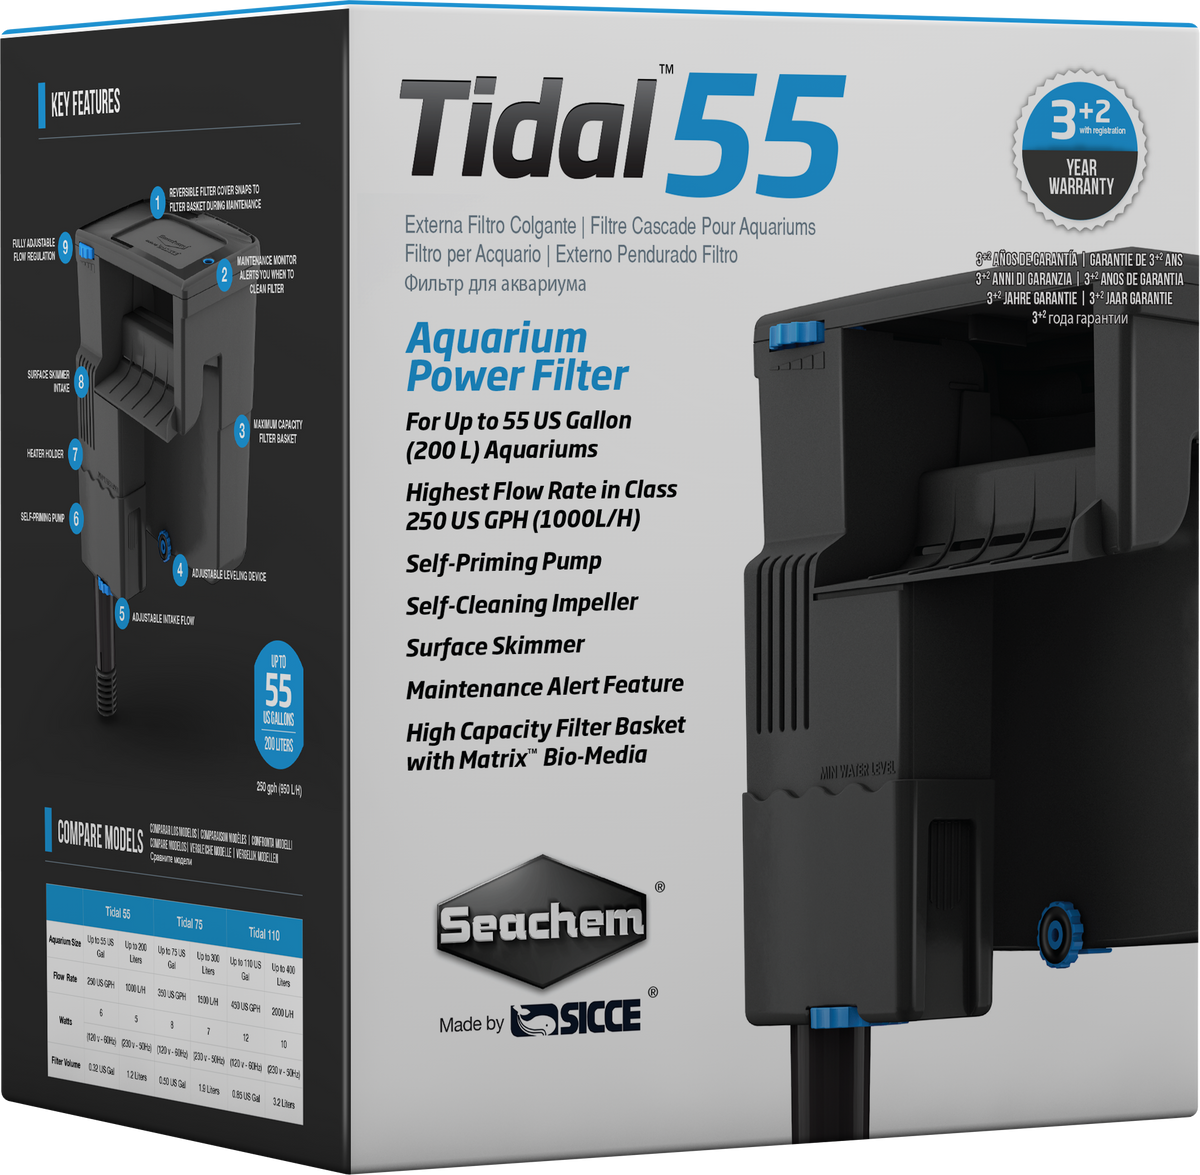 tidal 55 filter review